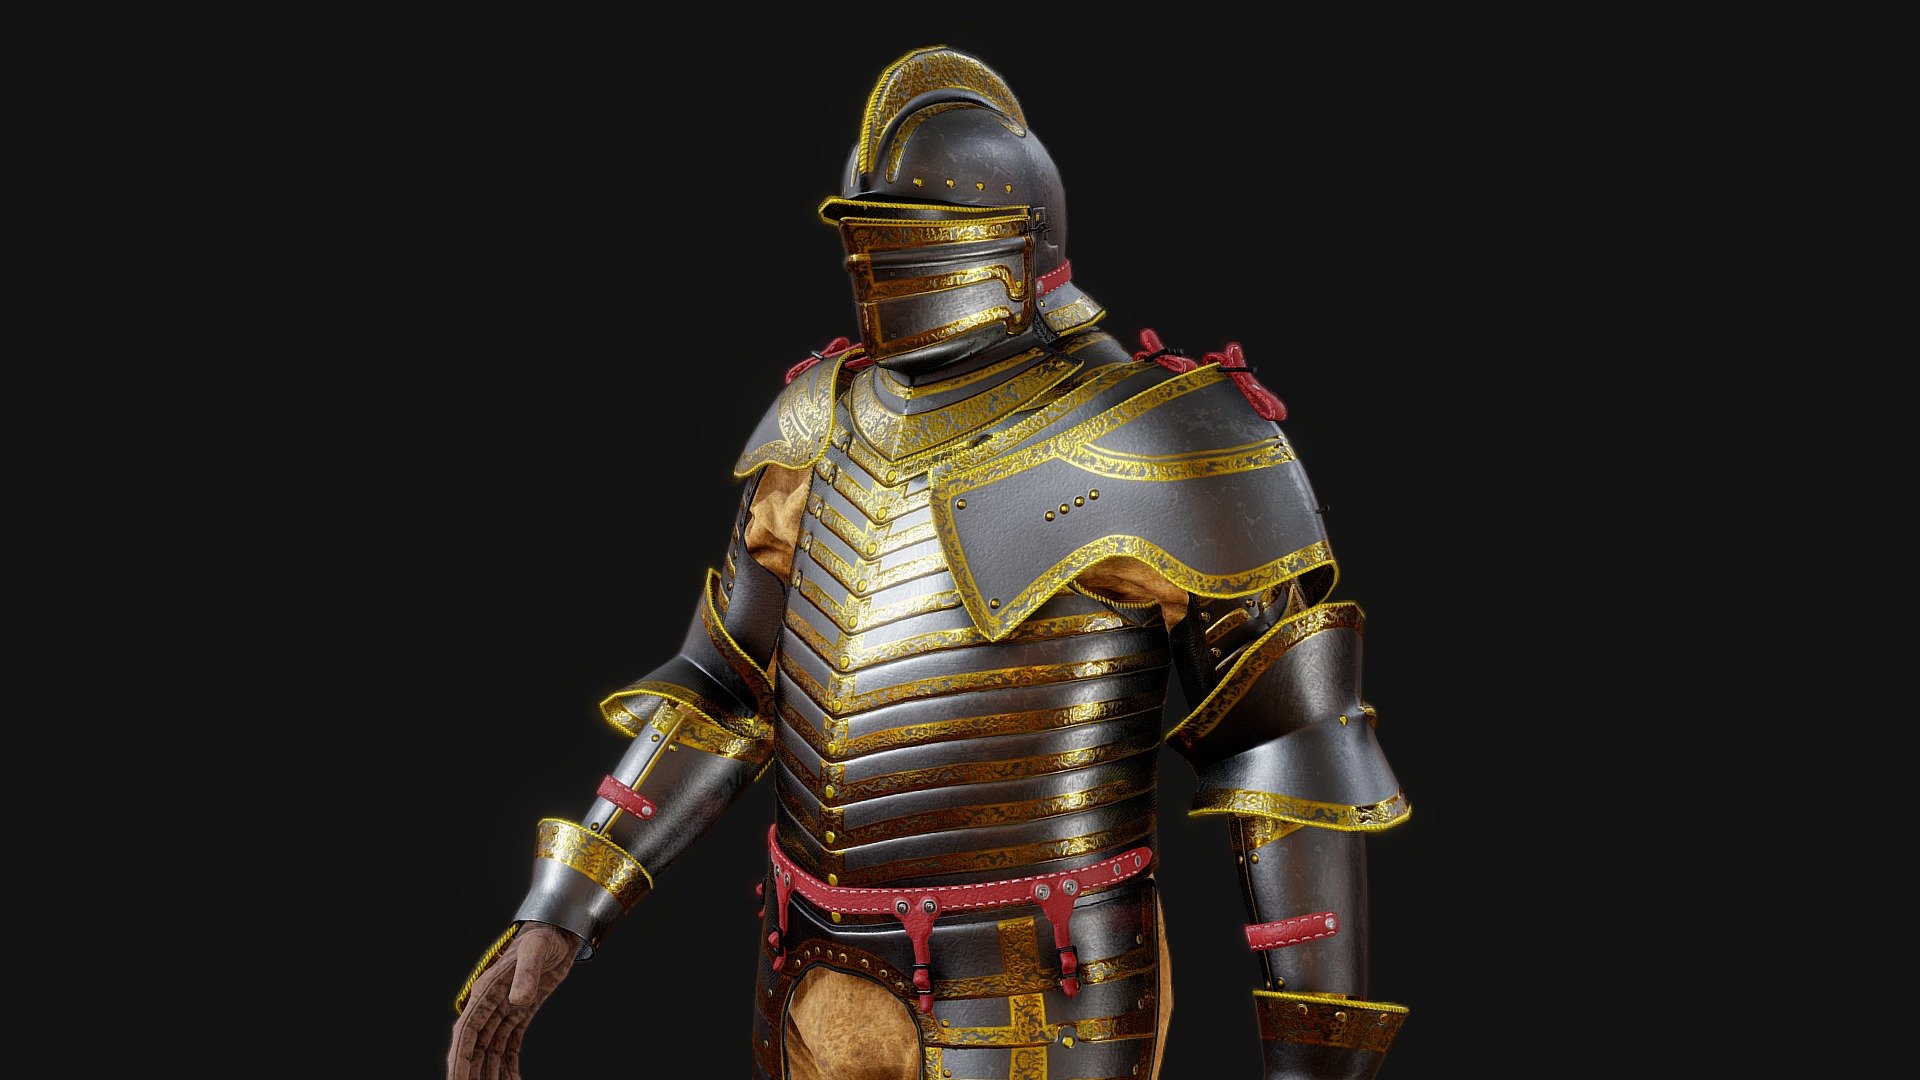 Based on King Henry VIII last armor 3d model